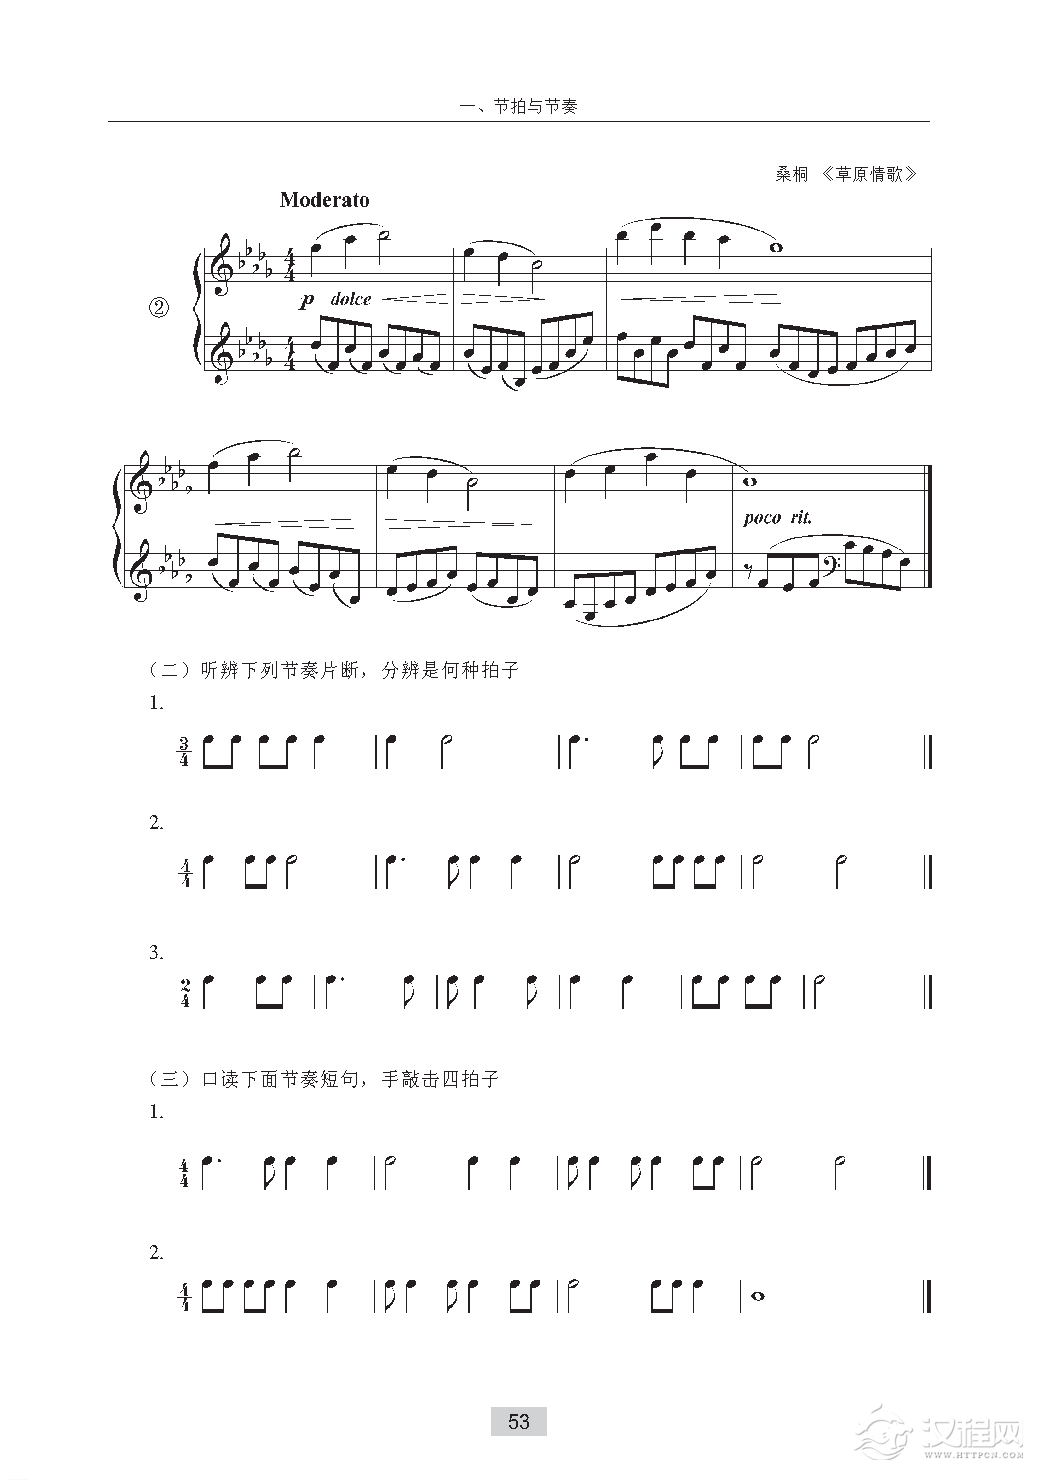 《节拍与节奏》4／4拍子与全音符